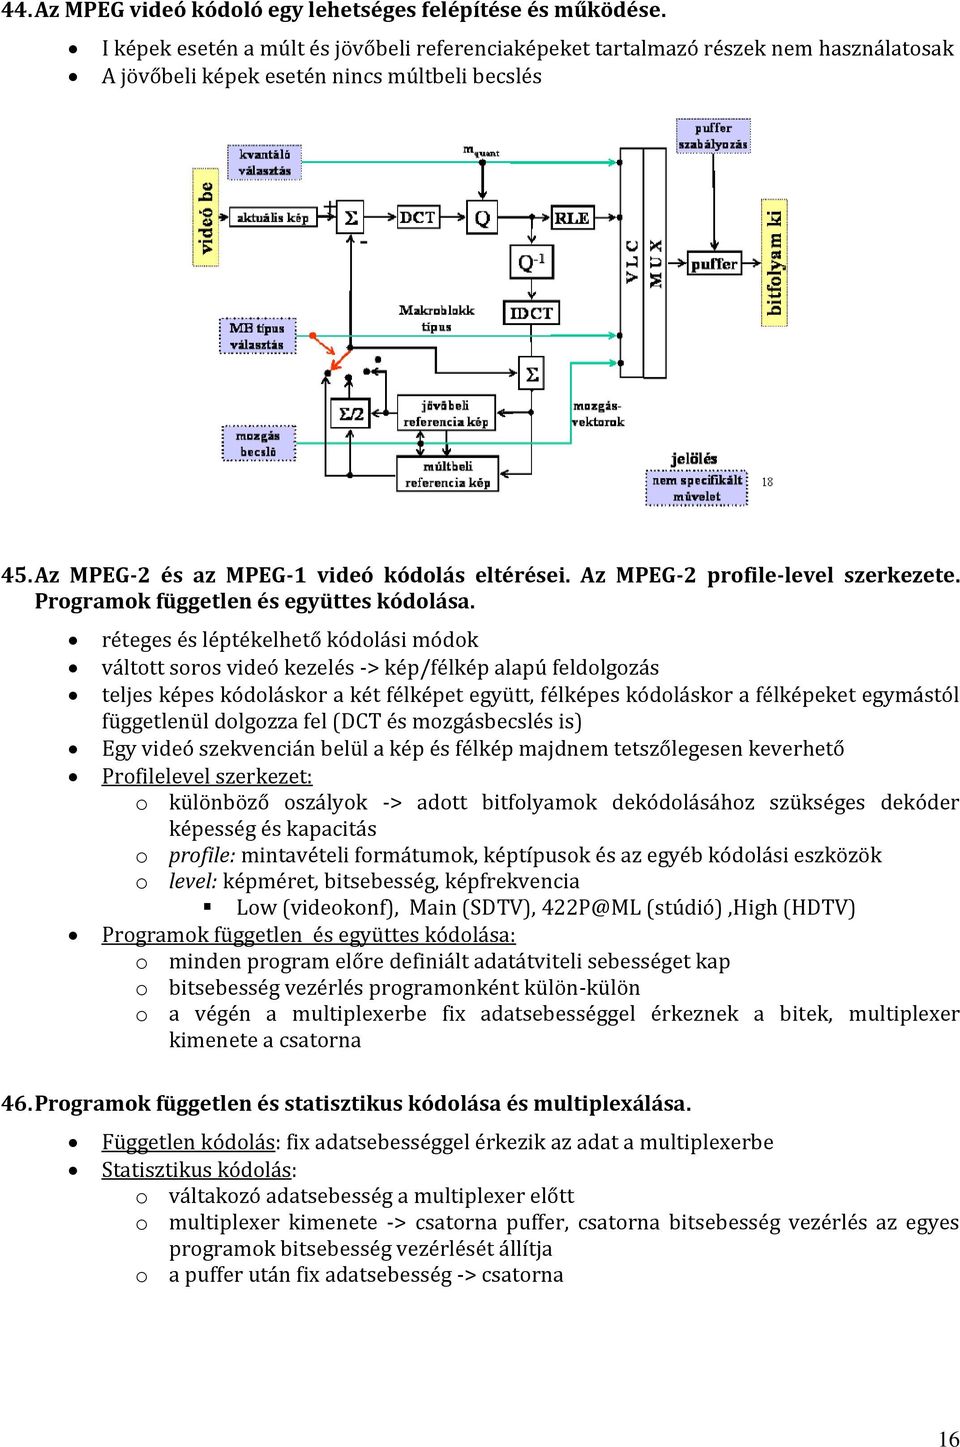 Az MPEG-2 profile-level szerkezete. Programok független és együttes kódolása.